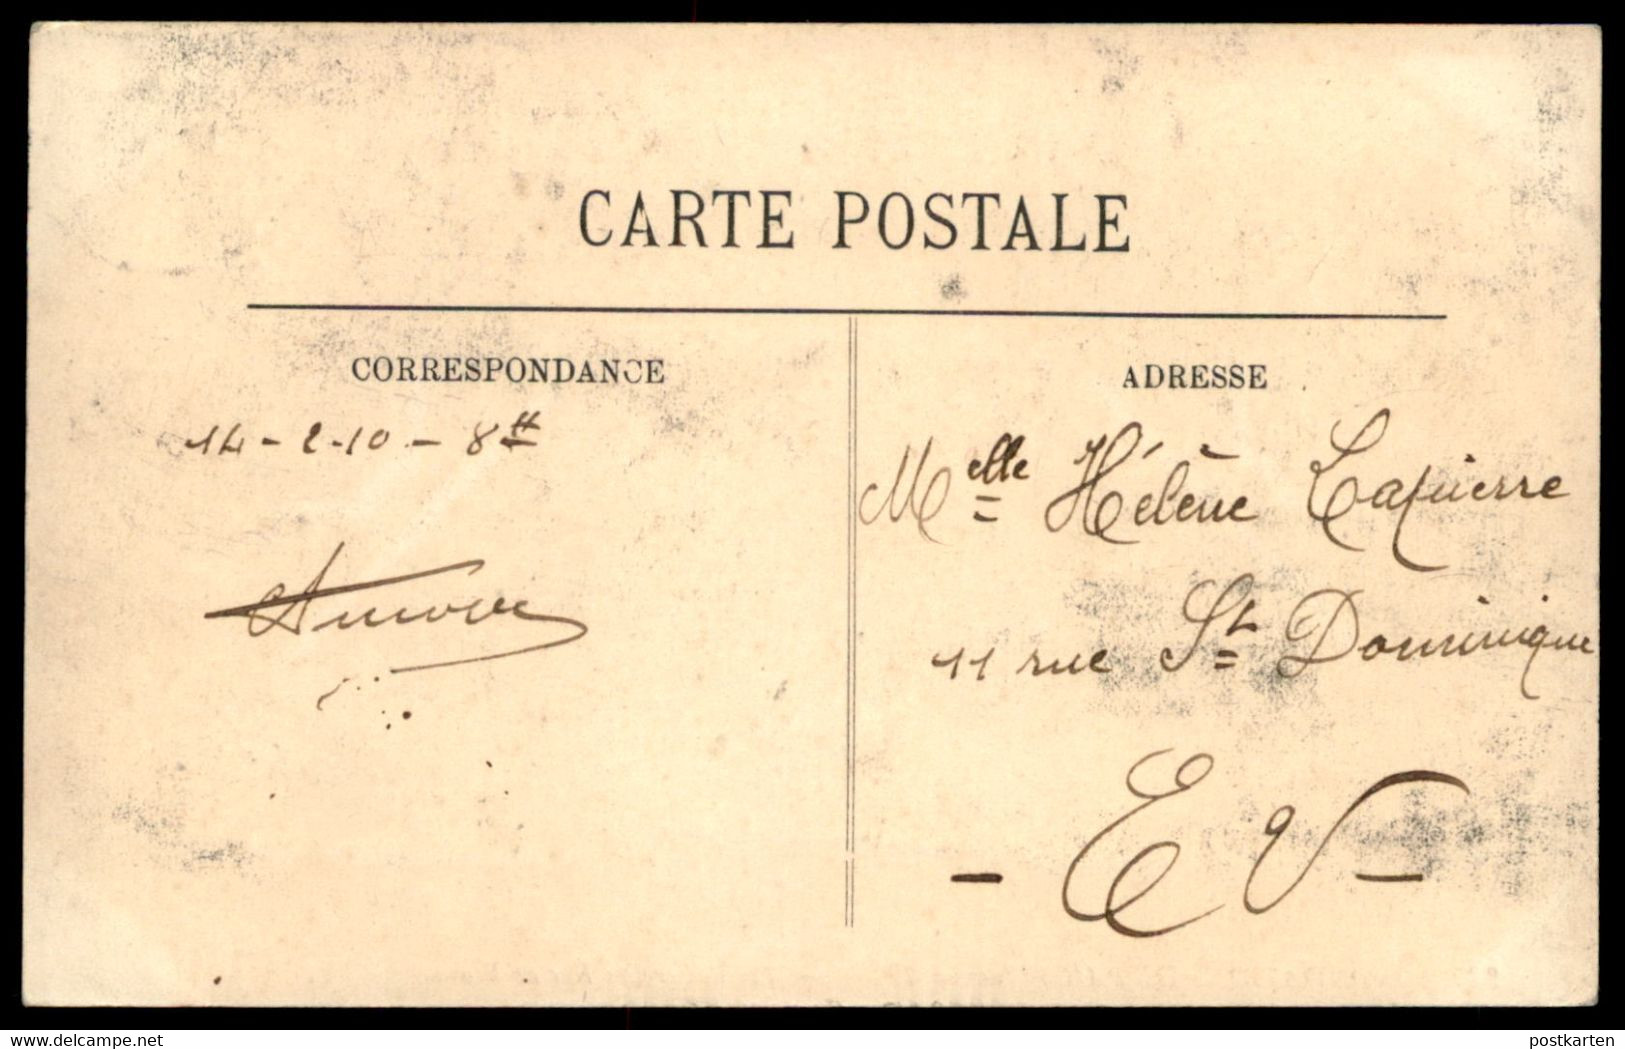 ALTE POSTKARTE PARIS HOCHWASSER 1910 RUE DE BEAUNE Flut Flood Inondations Crue Ansichtskarte Postcard Cpa AK - Überschwemmungen